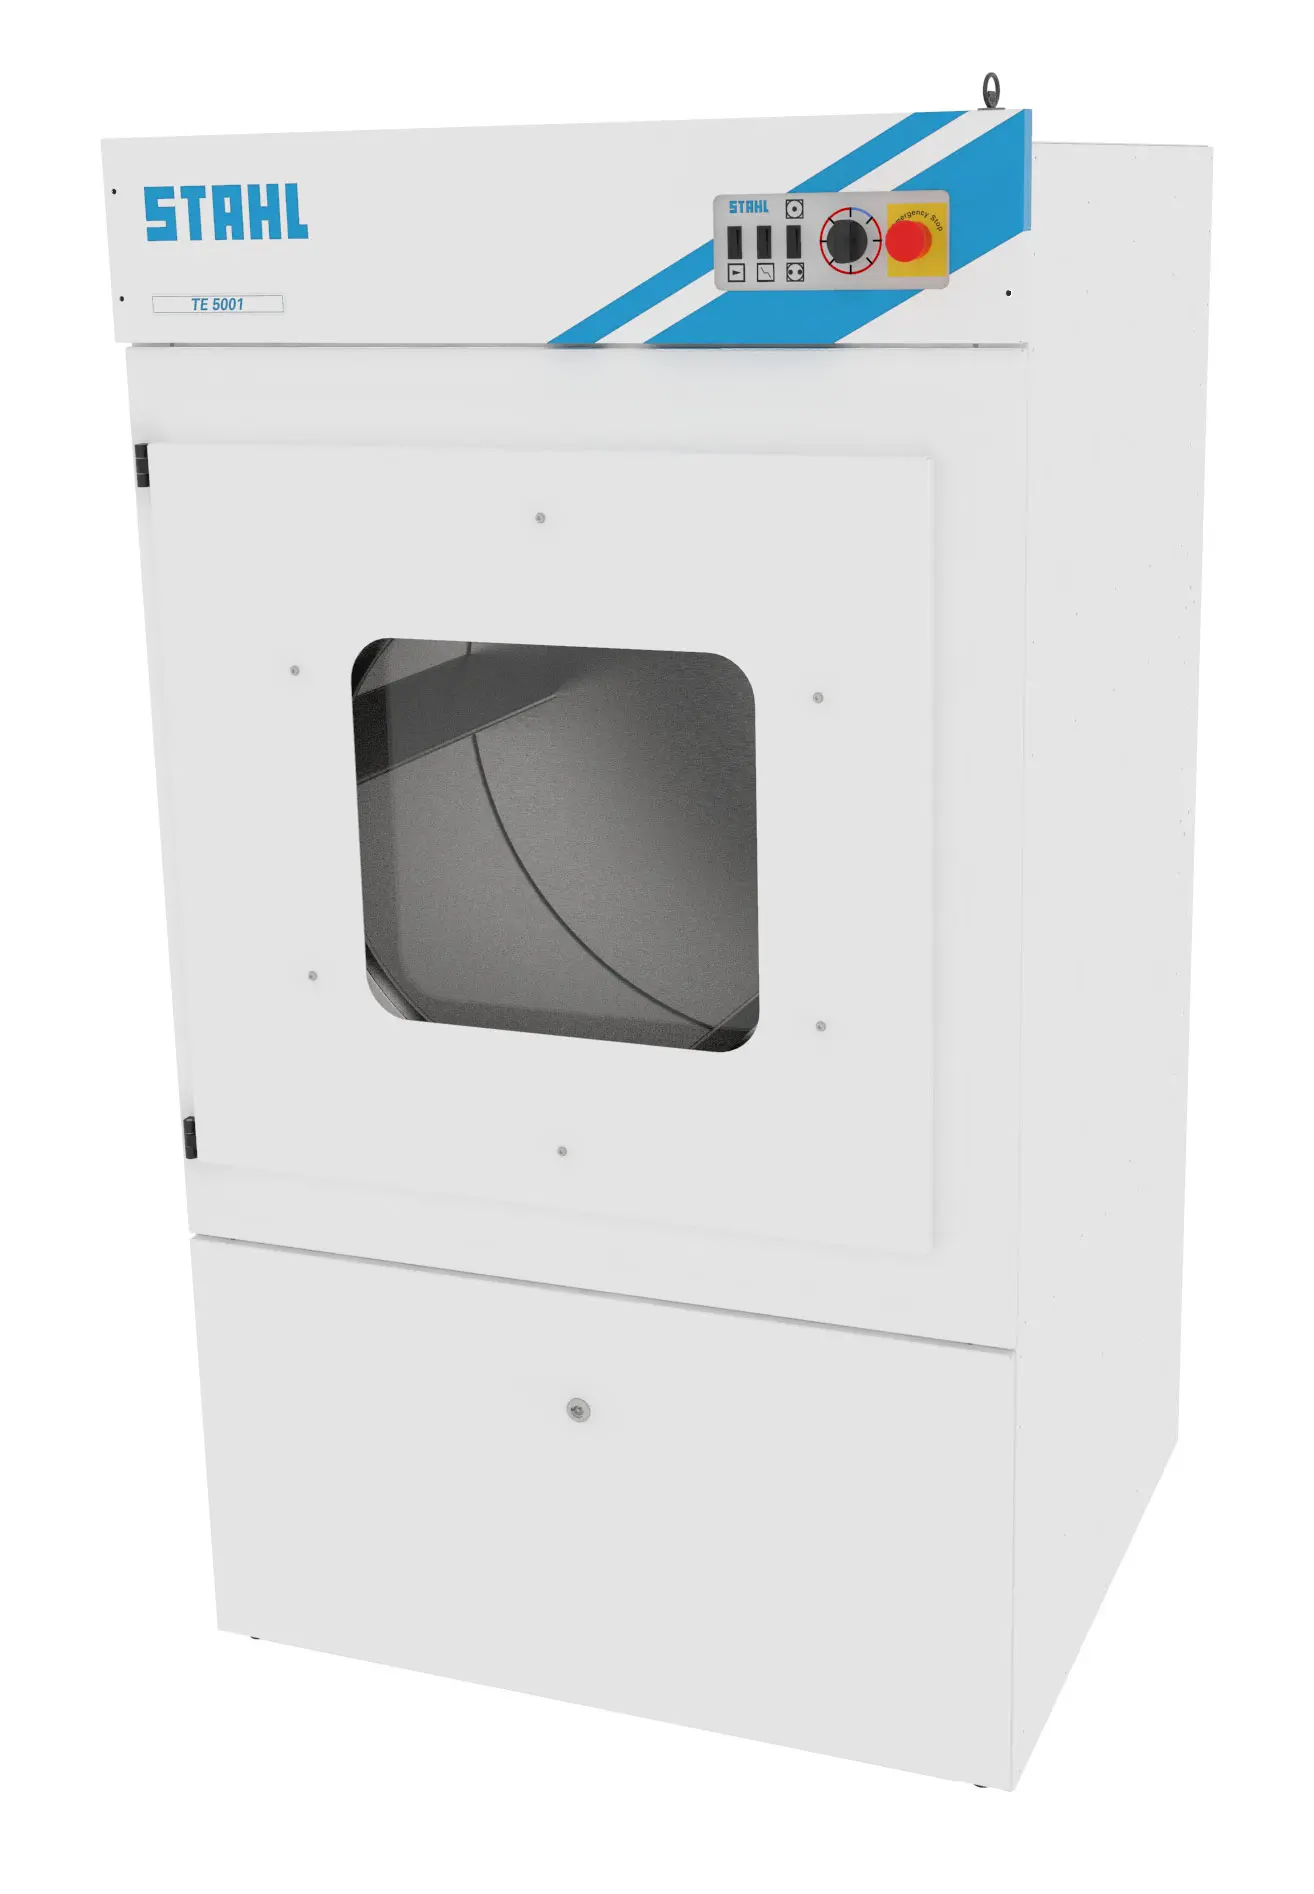 TE 3201-7001 Eco- Laundry dryers